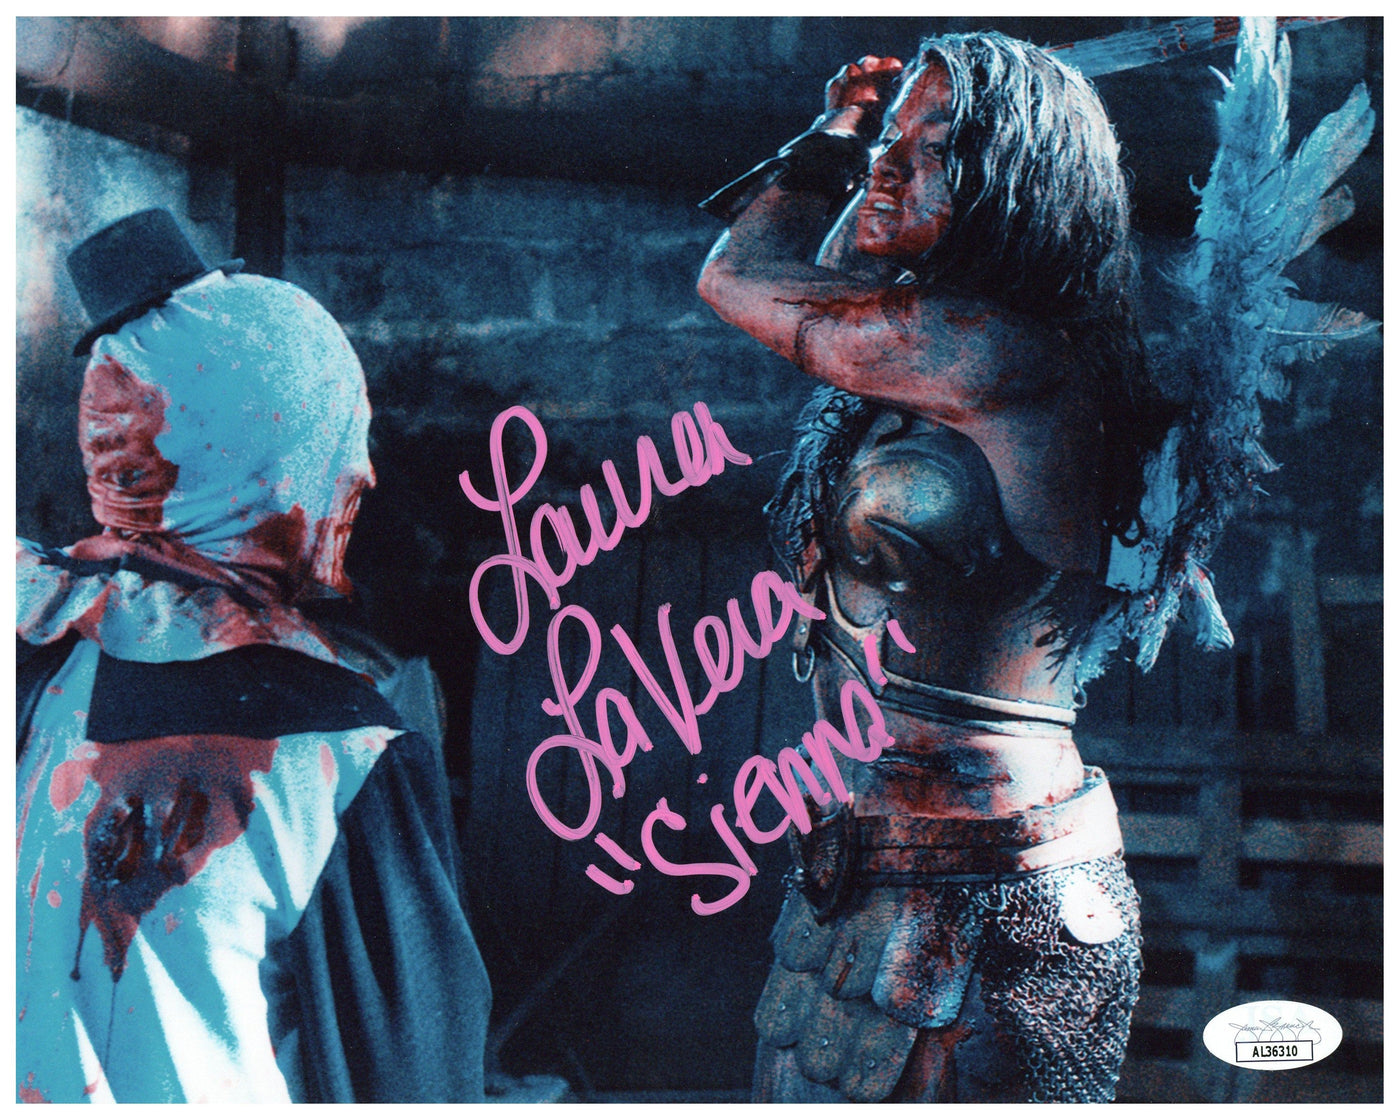 Lauren LaVera Signed 8x10 Photo Terrifier Horror Autographed JSA COA #2